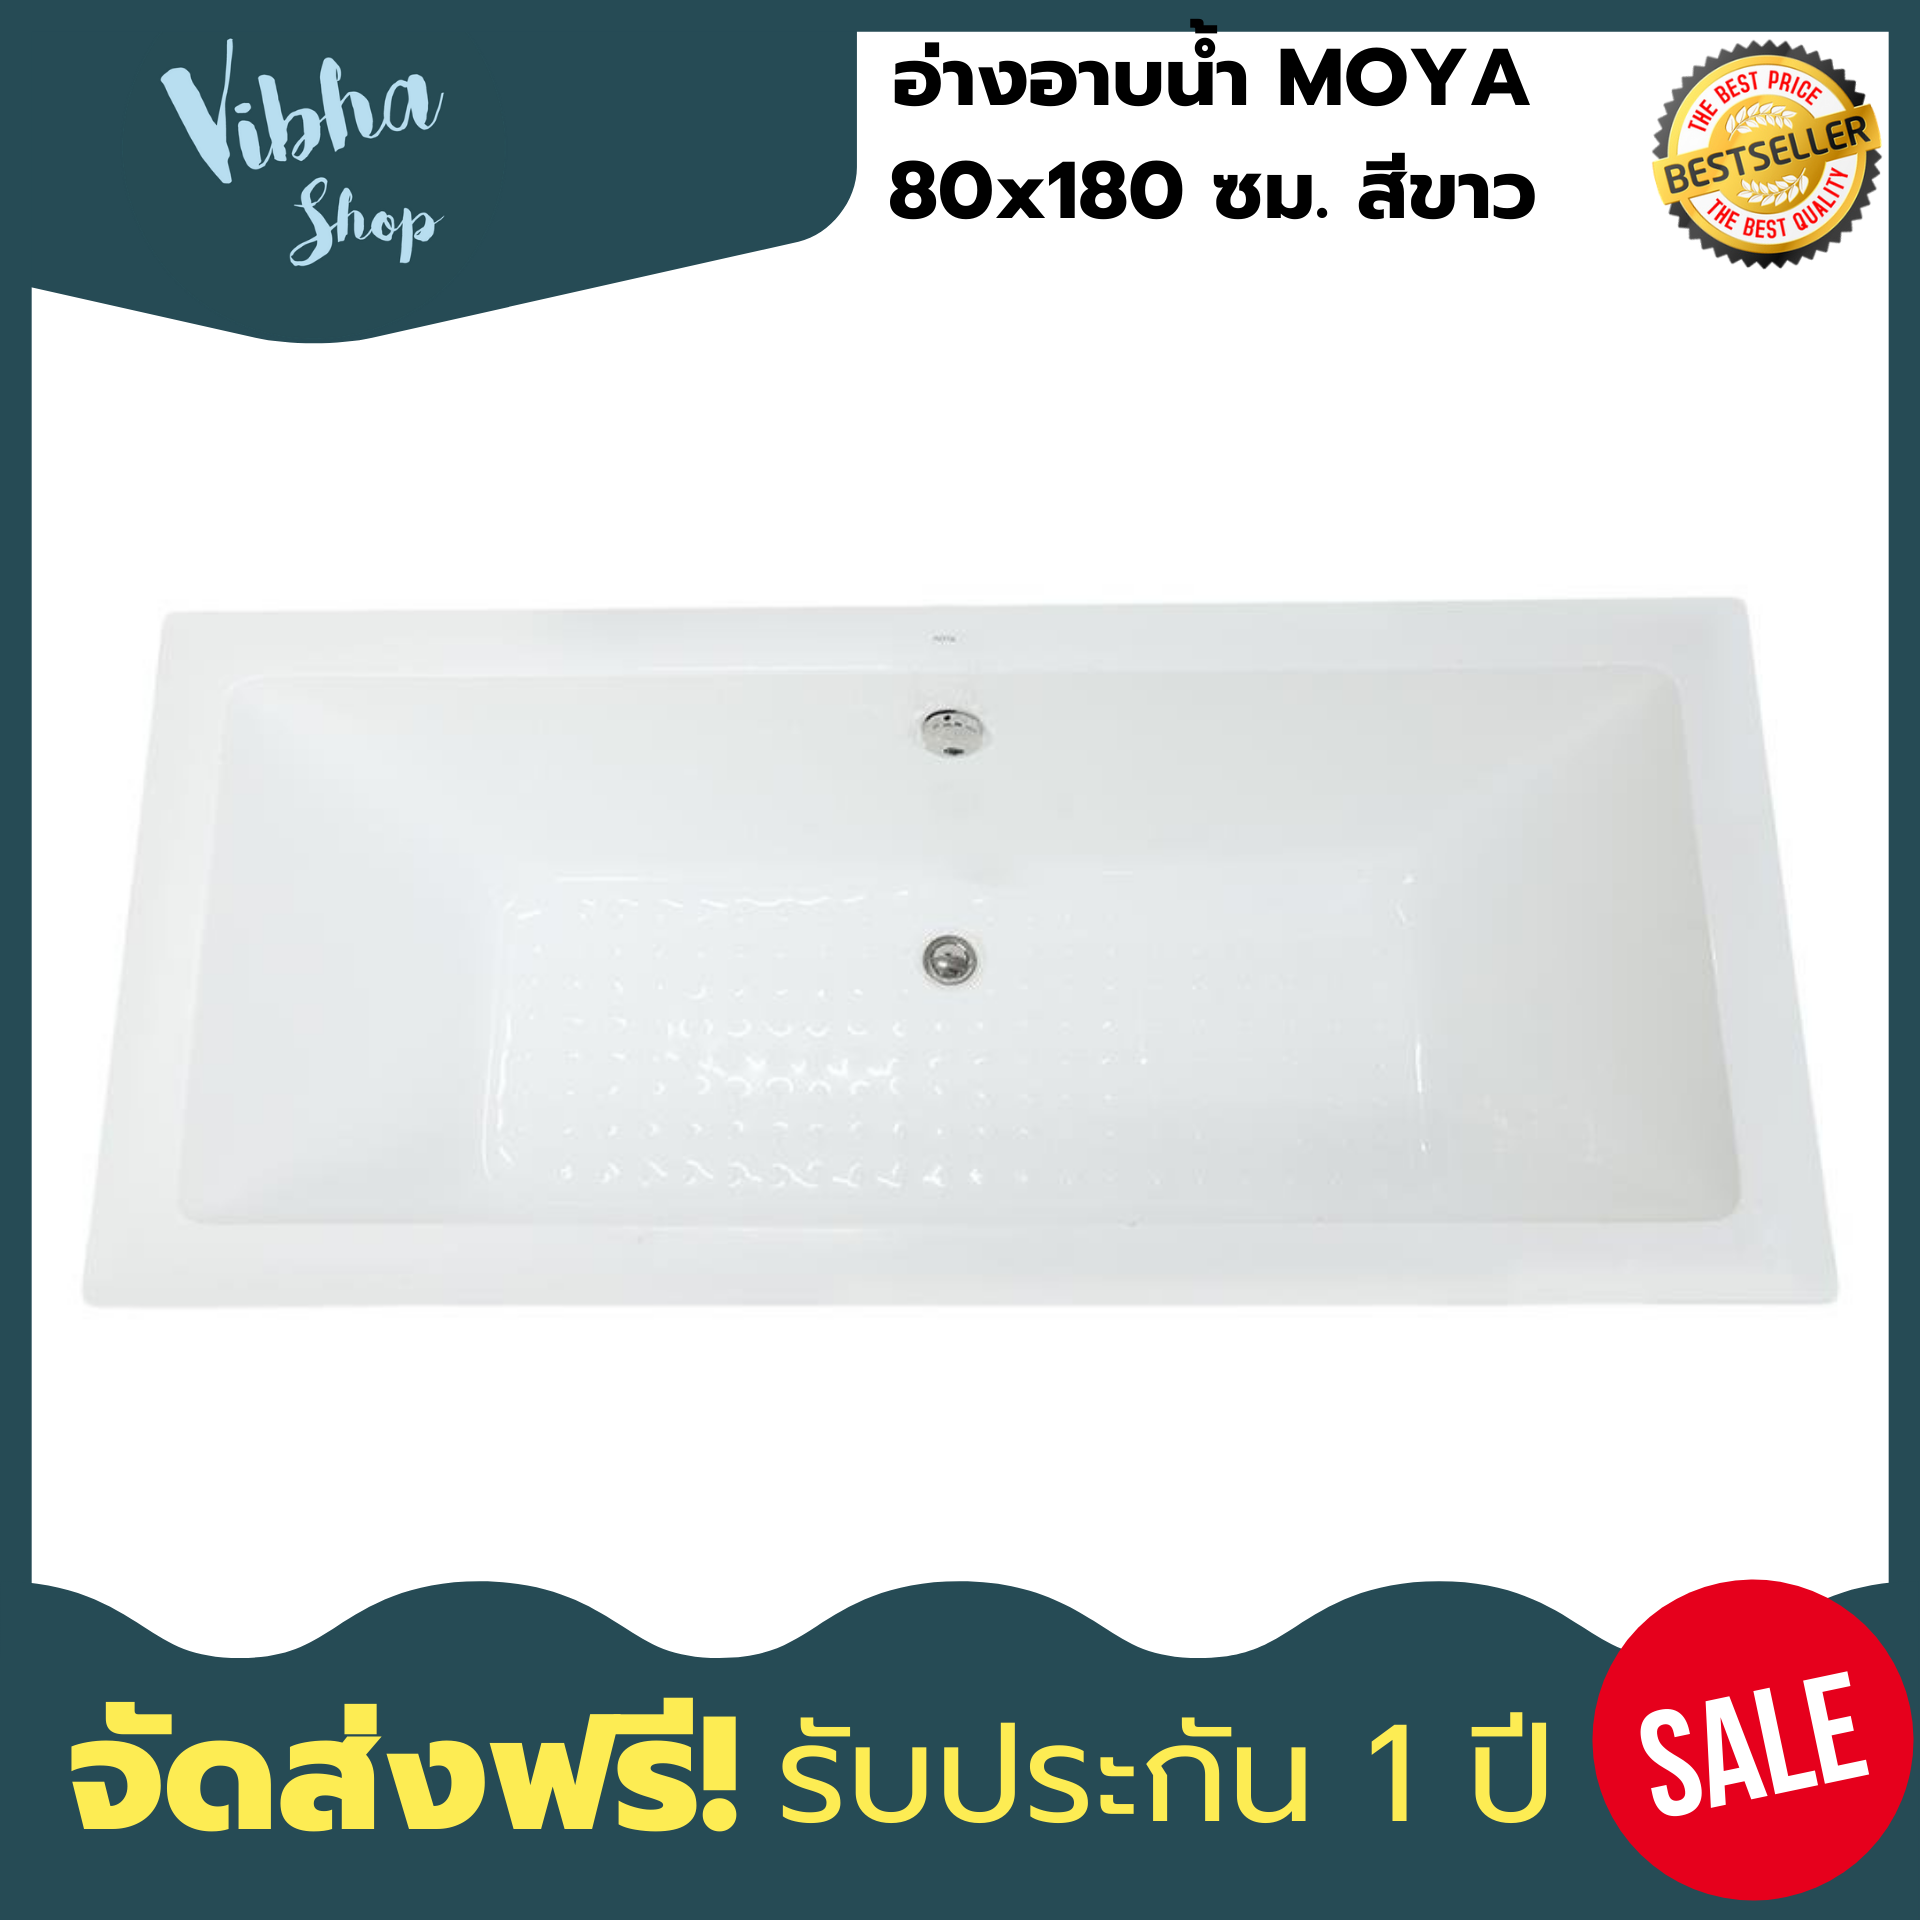 (ส่งฟรี) อ่างอาบน้ำ MOYA 80x180 ซม. สีขาว อ่างอาบน้ำ อ่างจากุชชี่ อ่างอาบน้ํา ของแท้ประกัน 1ปี Vibha shop